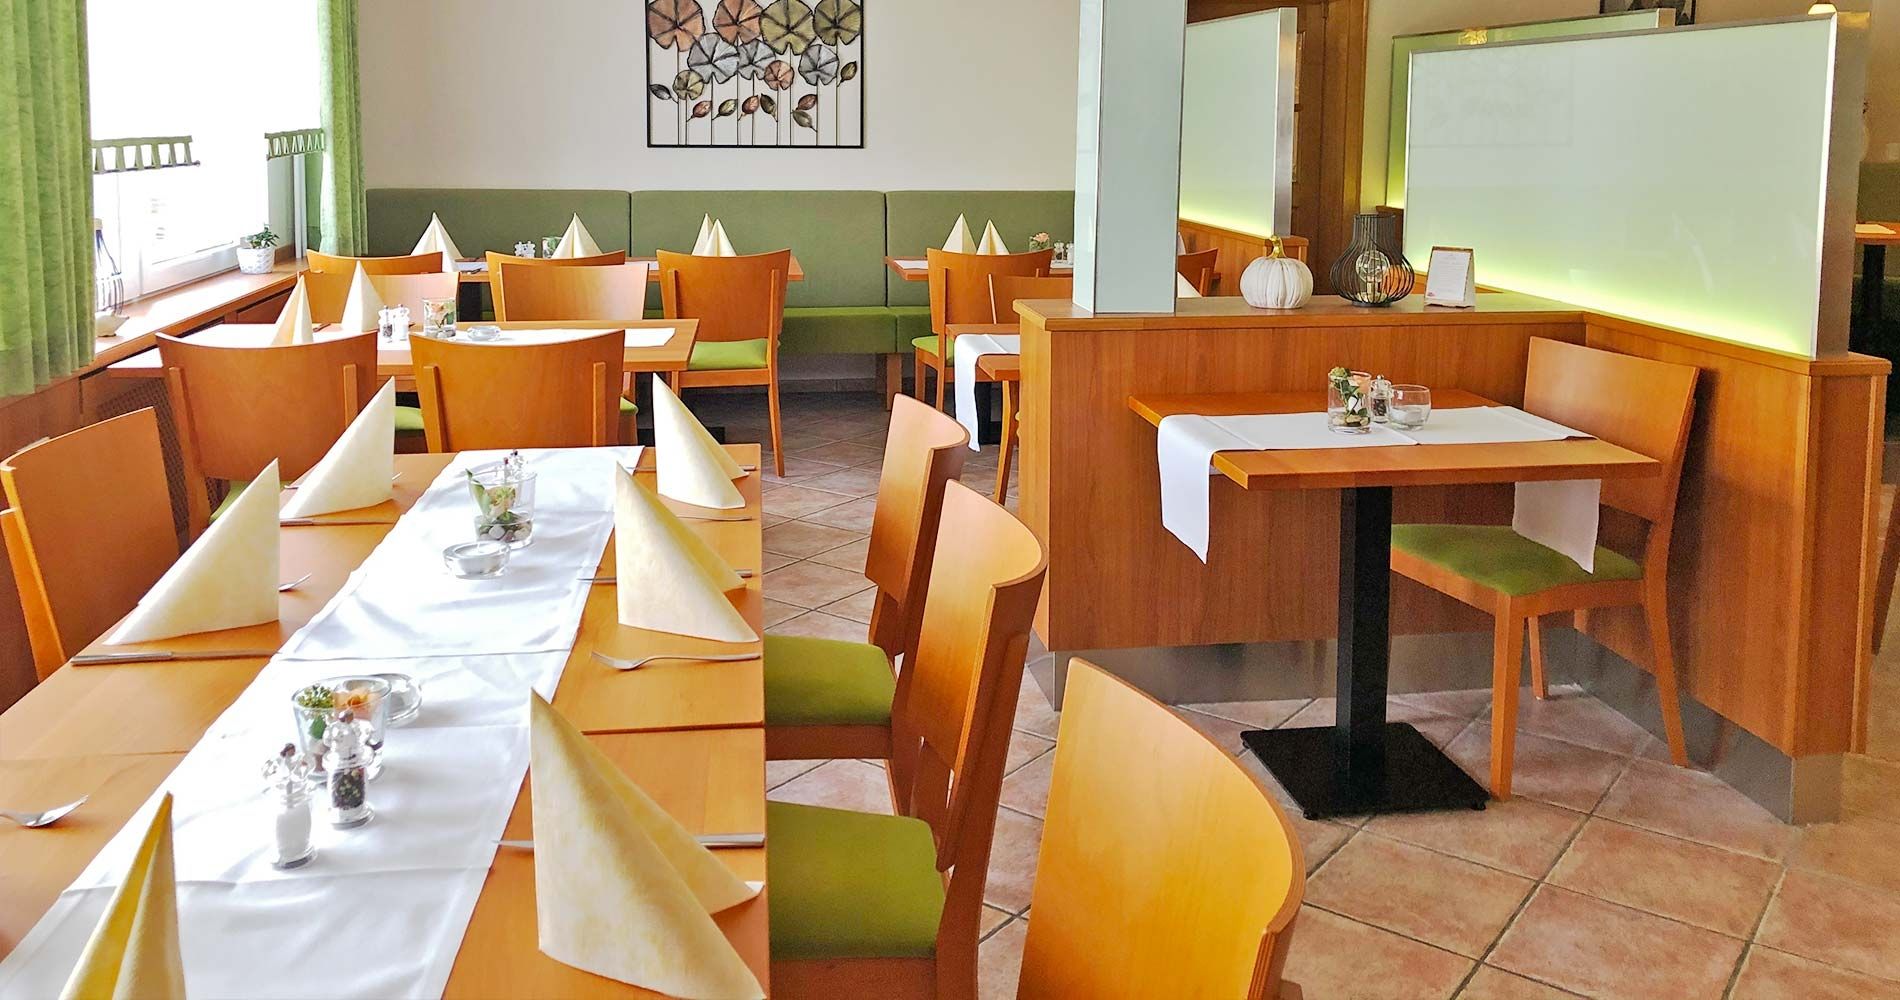 Speisegaststätte Orth - Restaurant Lenderscheid - Die Speisekarte Speisegaststätte Orth